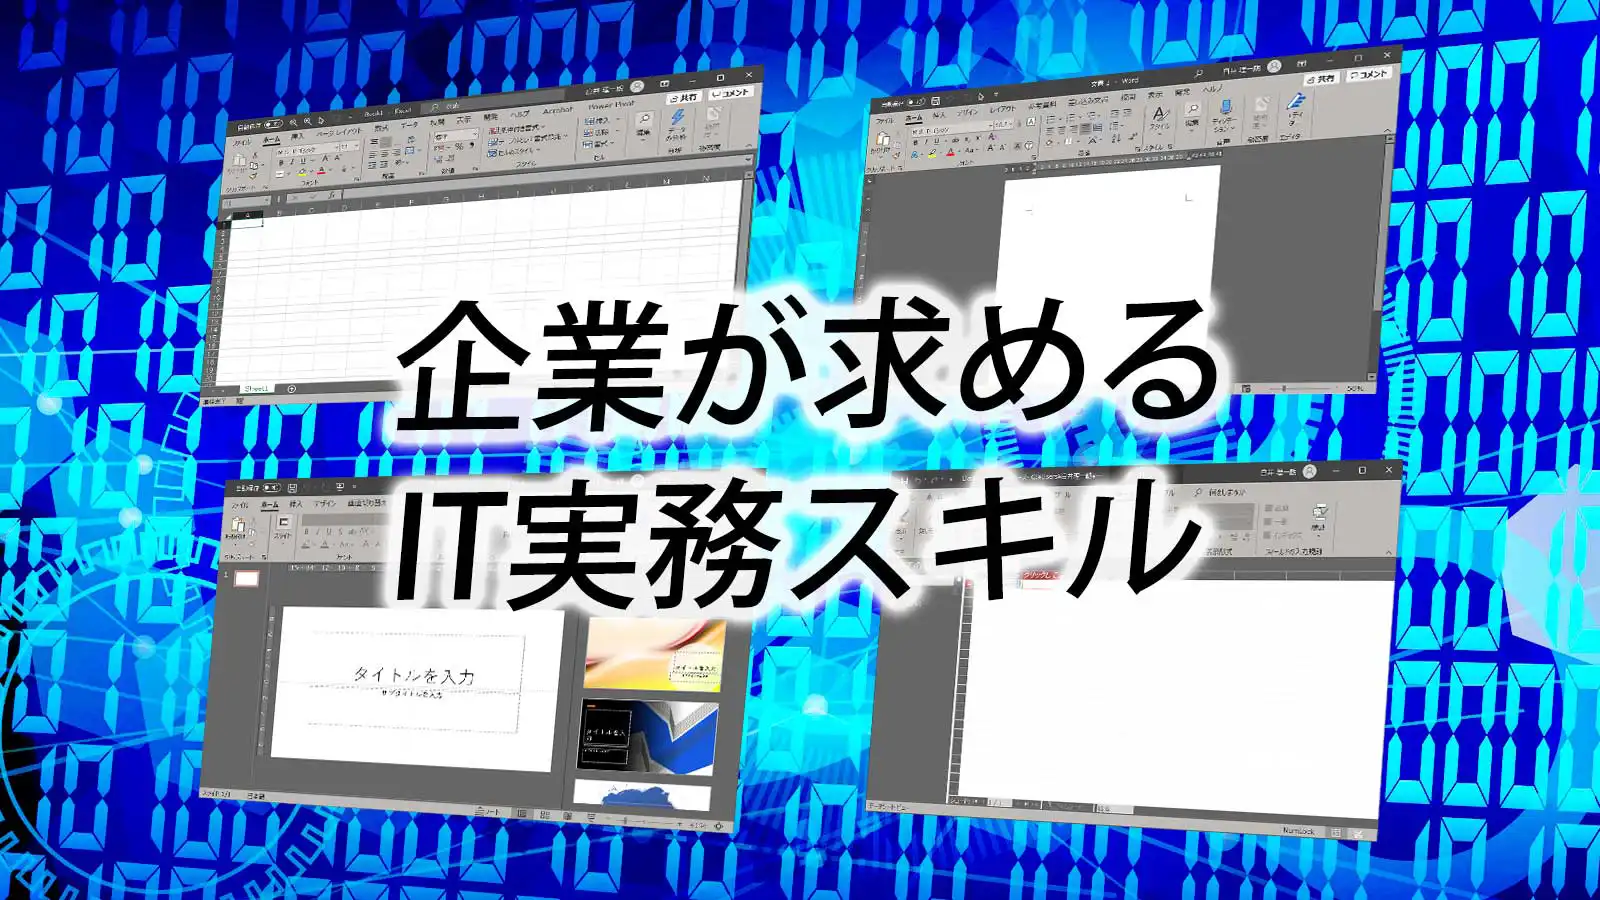 フォーム竹ノ塚で学習できるIT実務スキルキャッチコピー画像